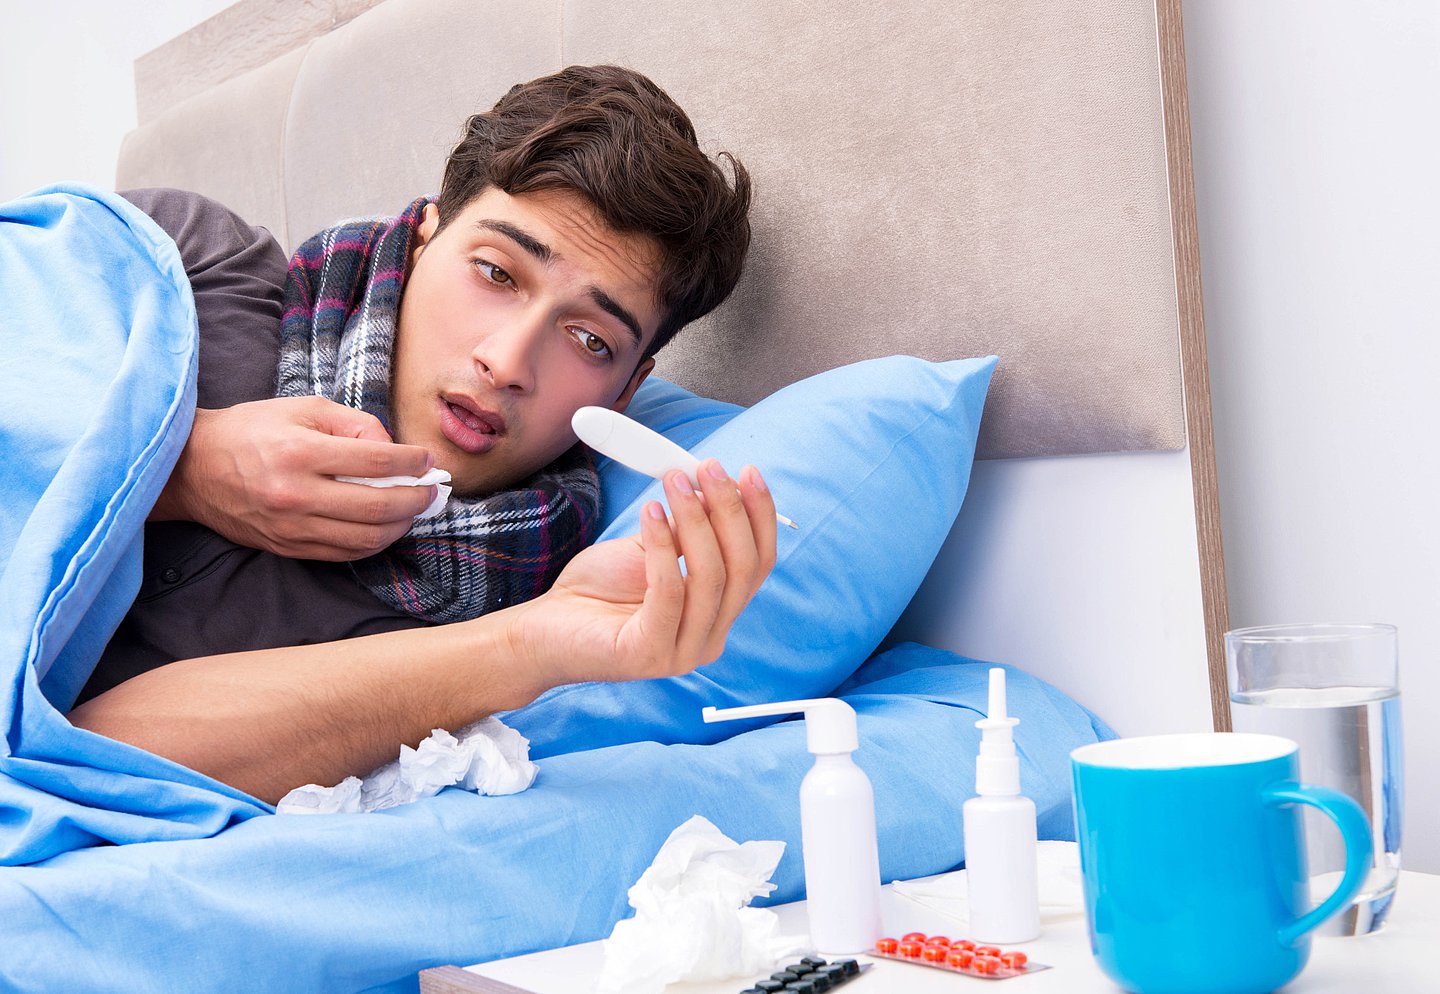 Foto zeigt einen kranken Mann, der mit Fieber im Bett liegt und einen grippalen Infekt auskuriert..